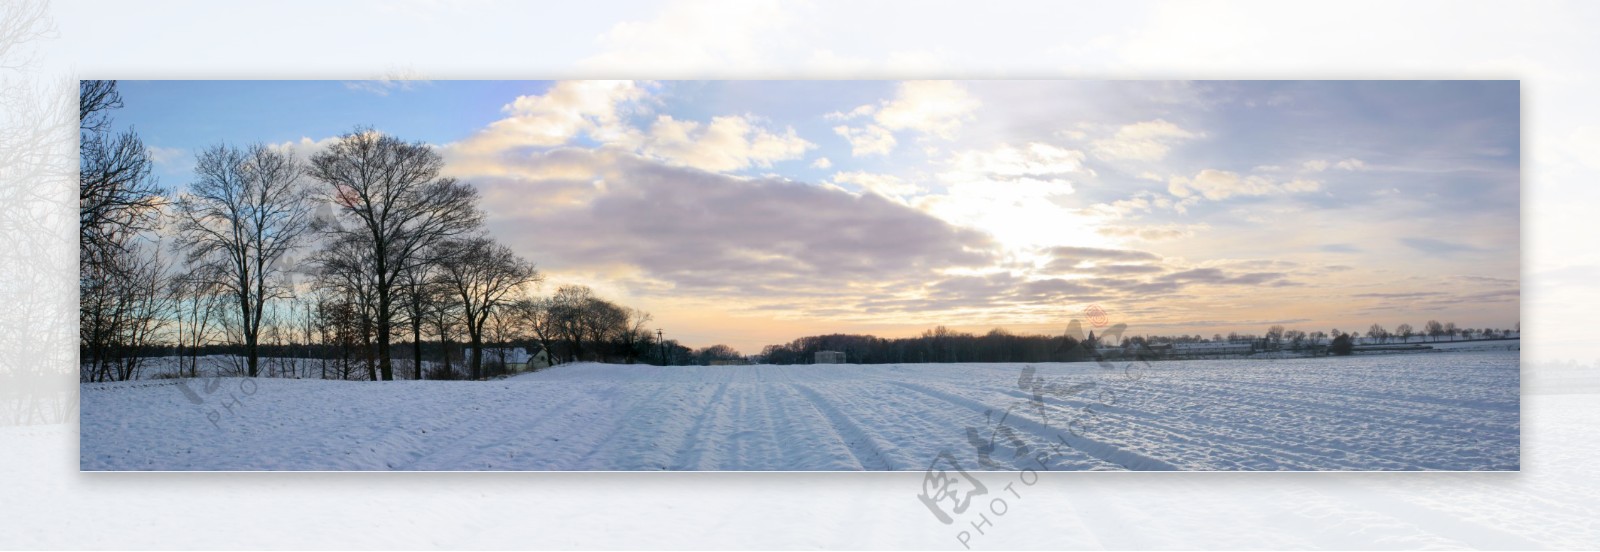 冬季雪地风景图片